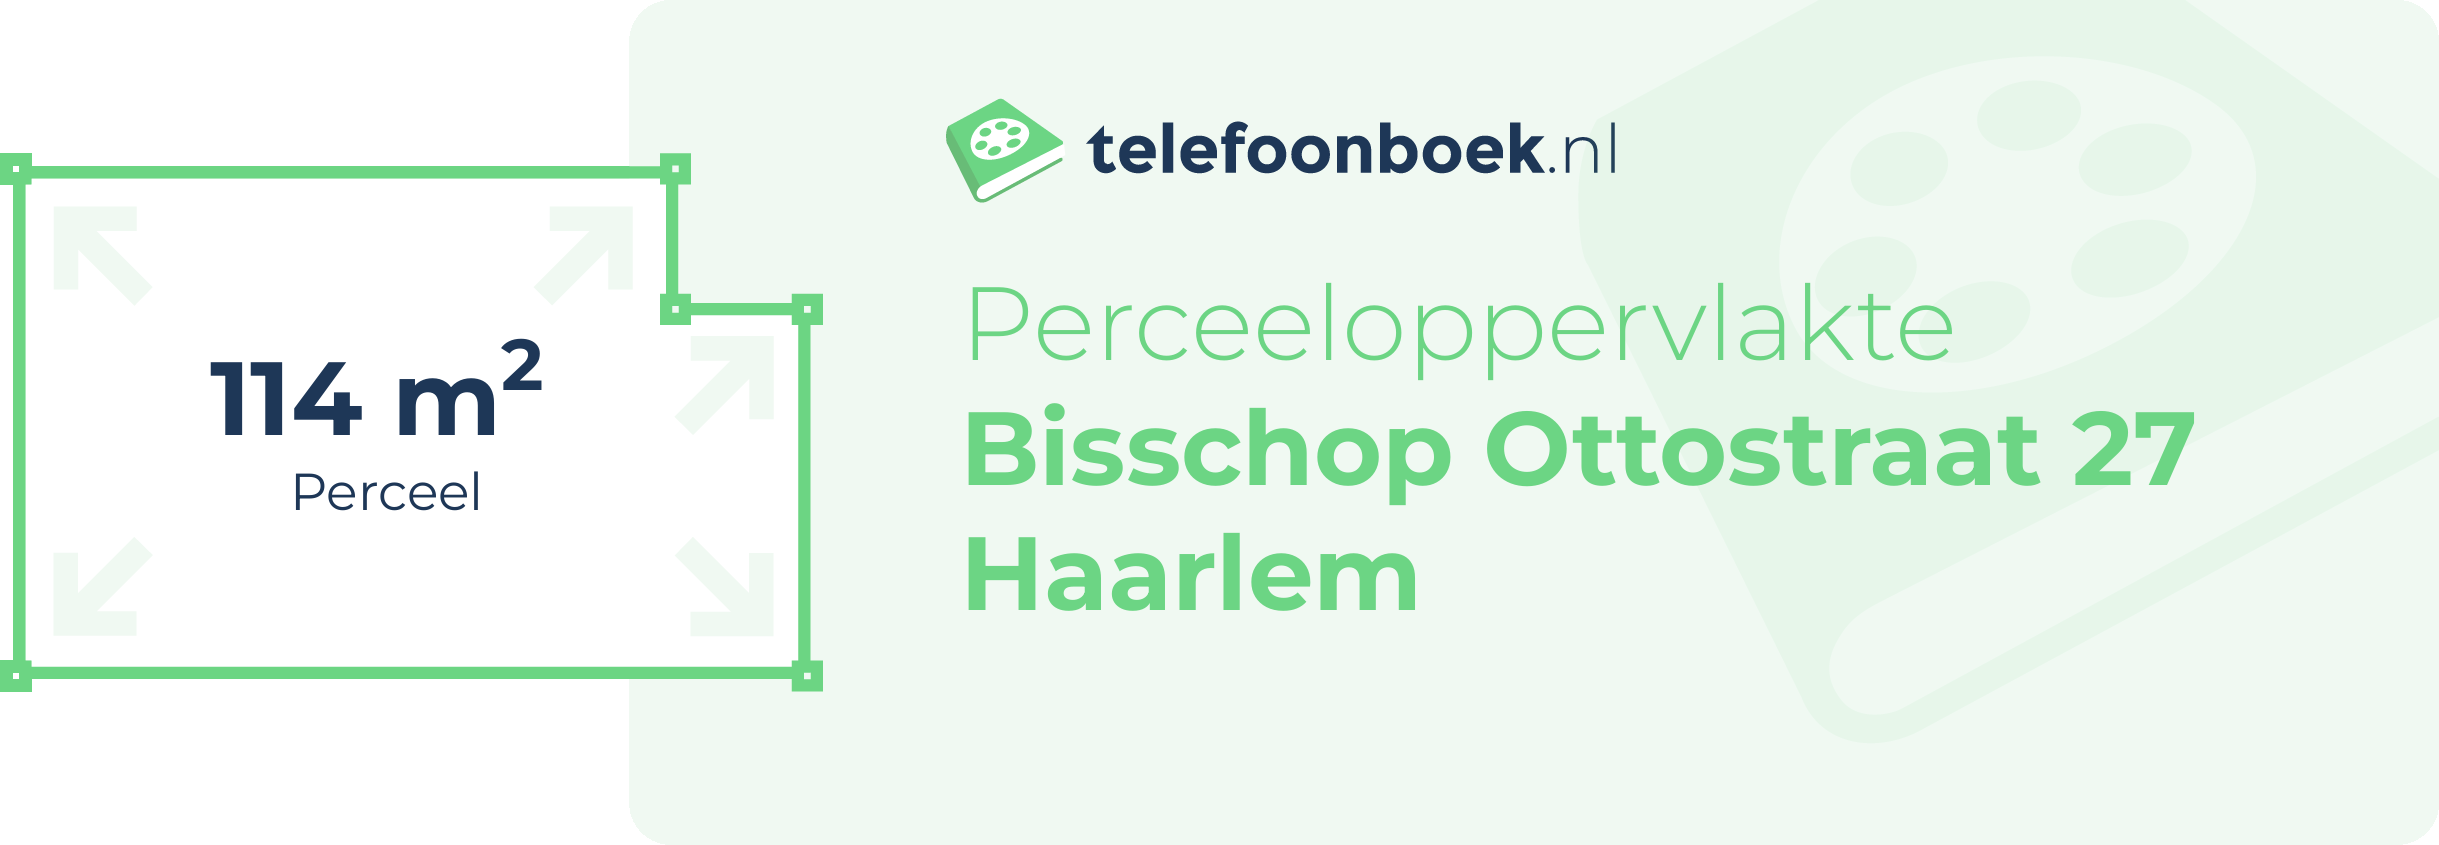 Perceeloppervlakte Bisschop Ottostraat 27 Haarlem